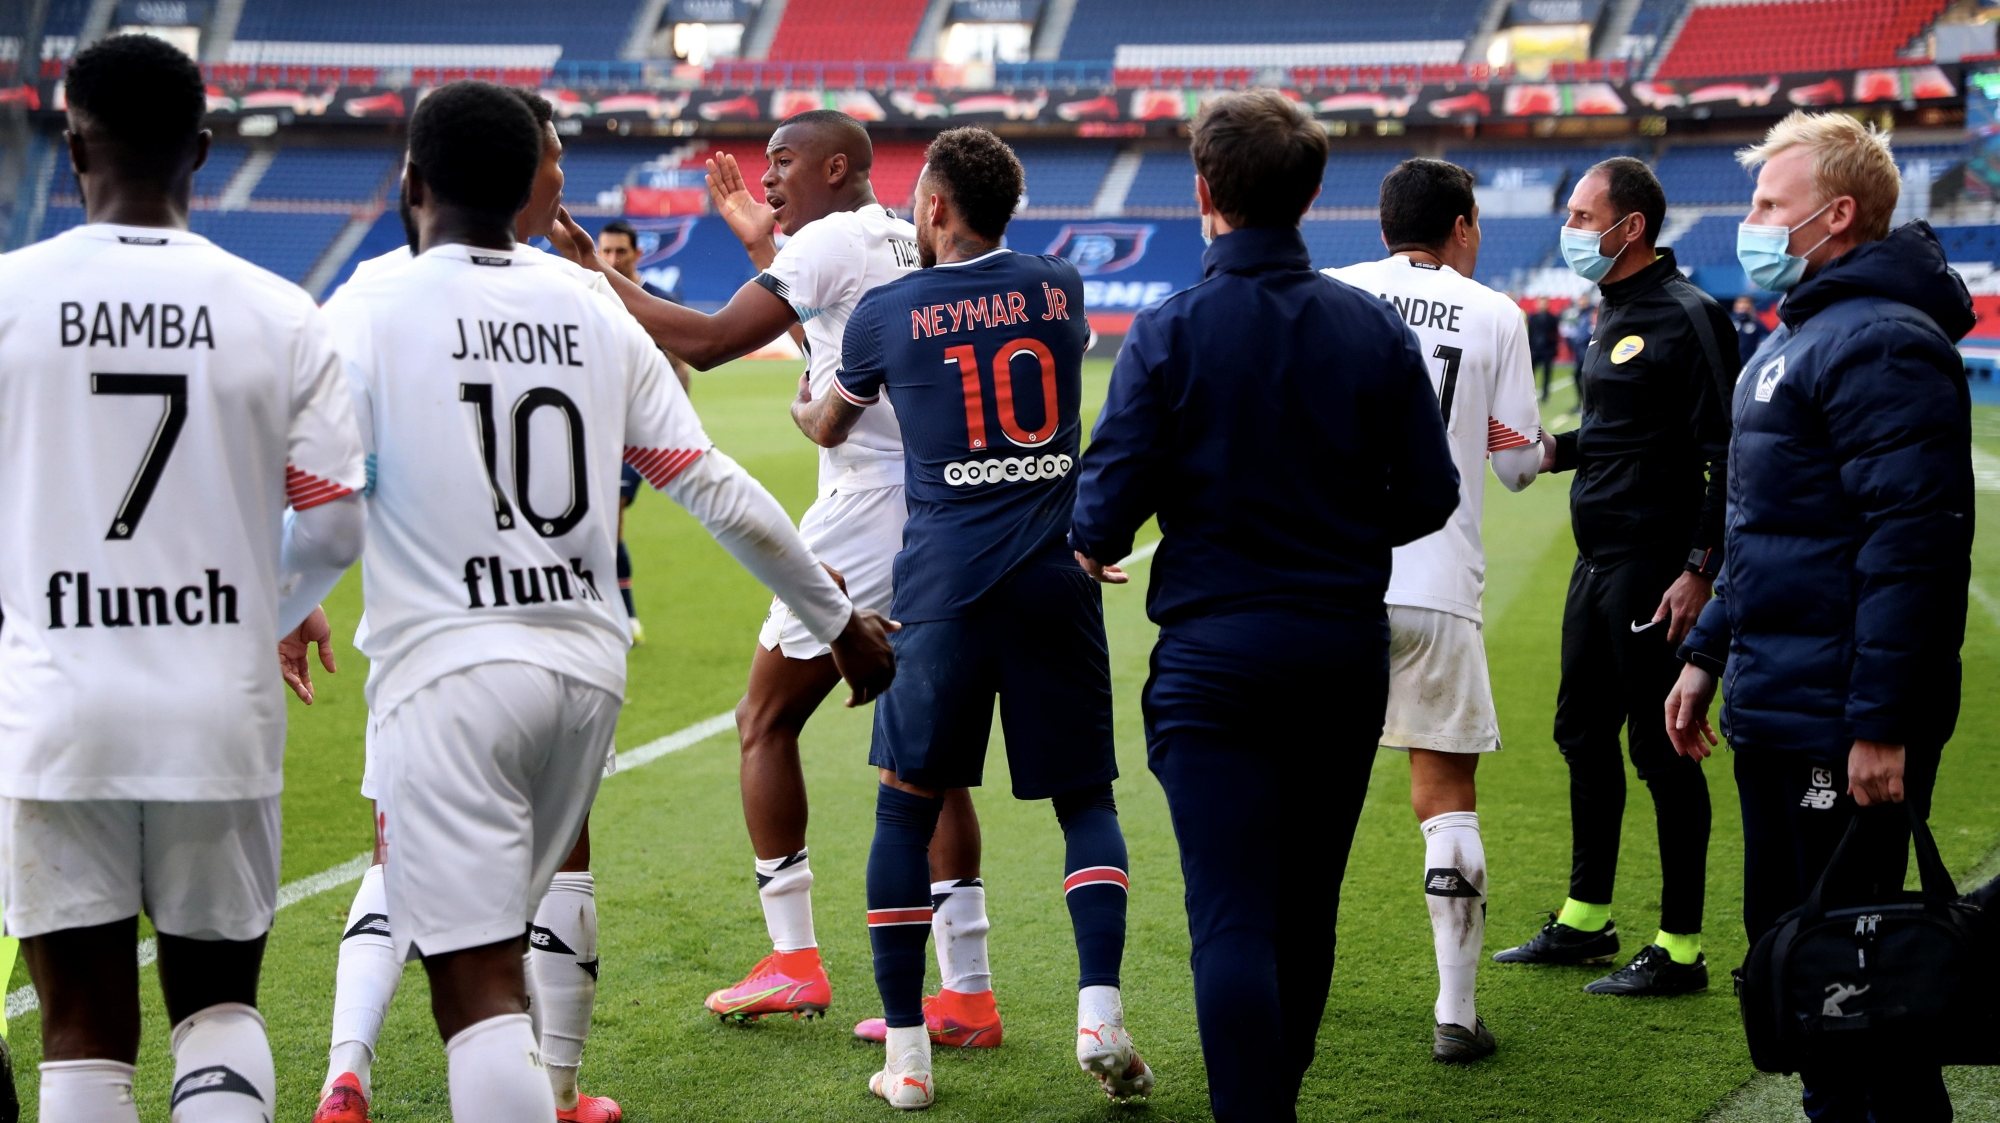 Neymar abraçou Tiago Djaló quando o central protestava pela expulsão mas troca de palavras foi aumentando entre os jogadores até ao túnel